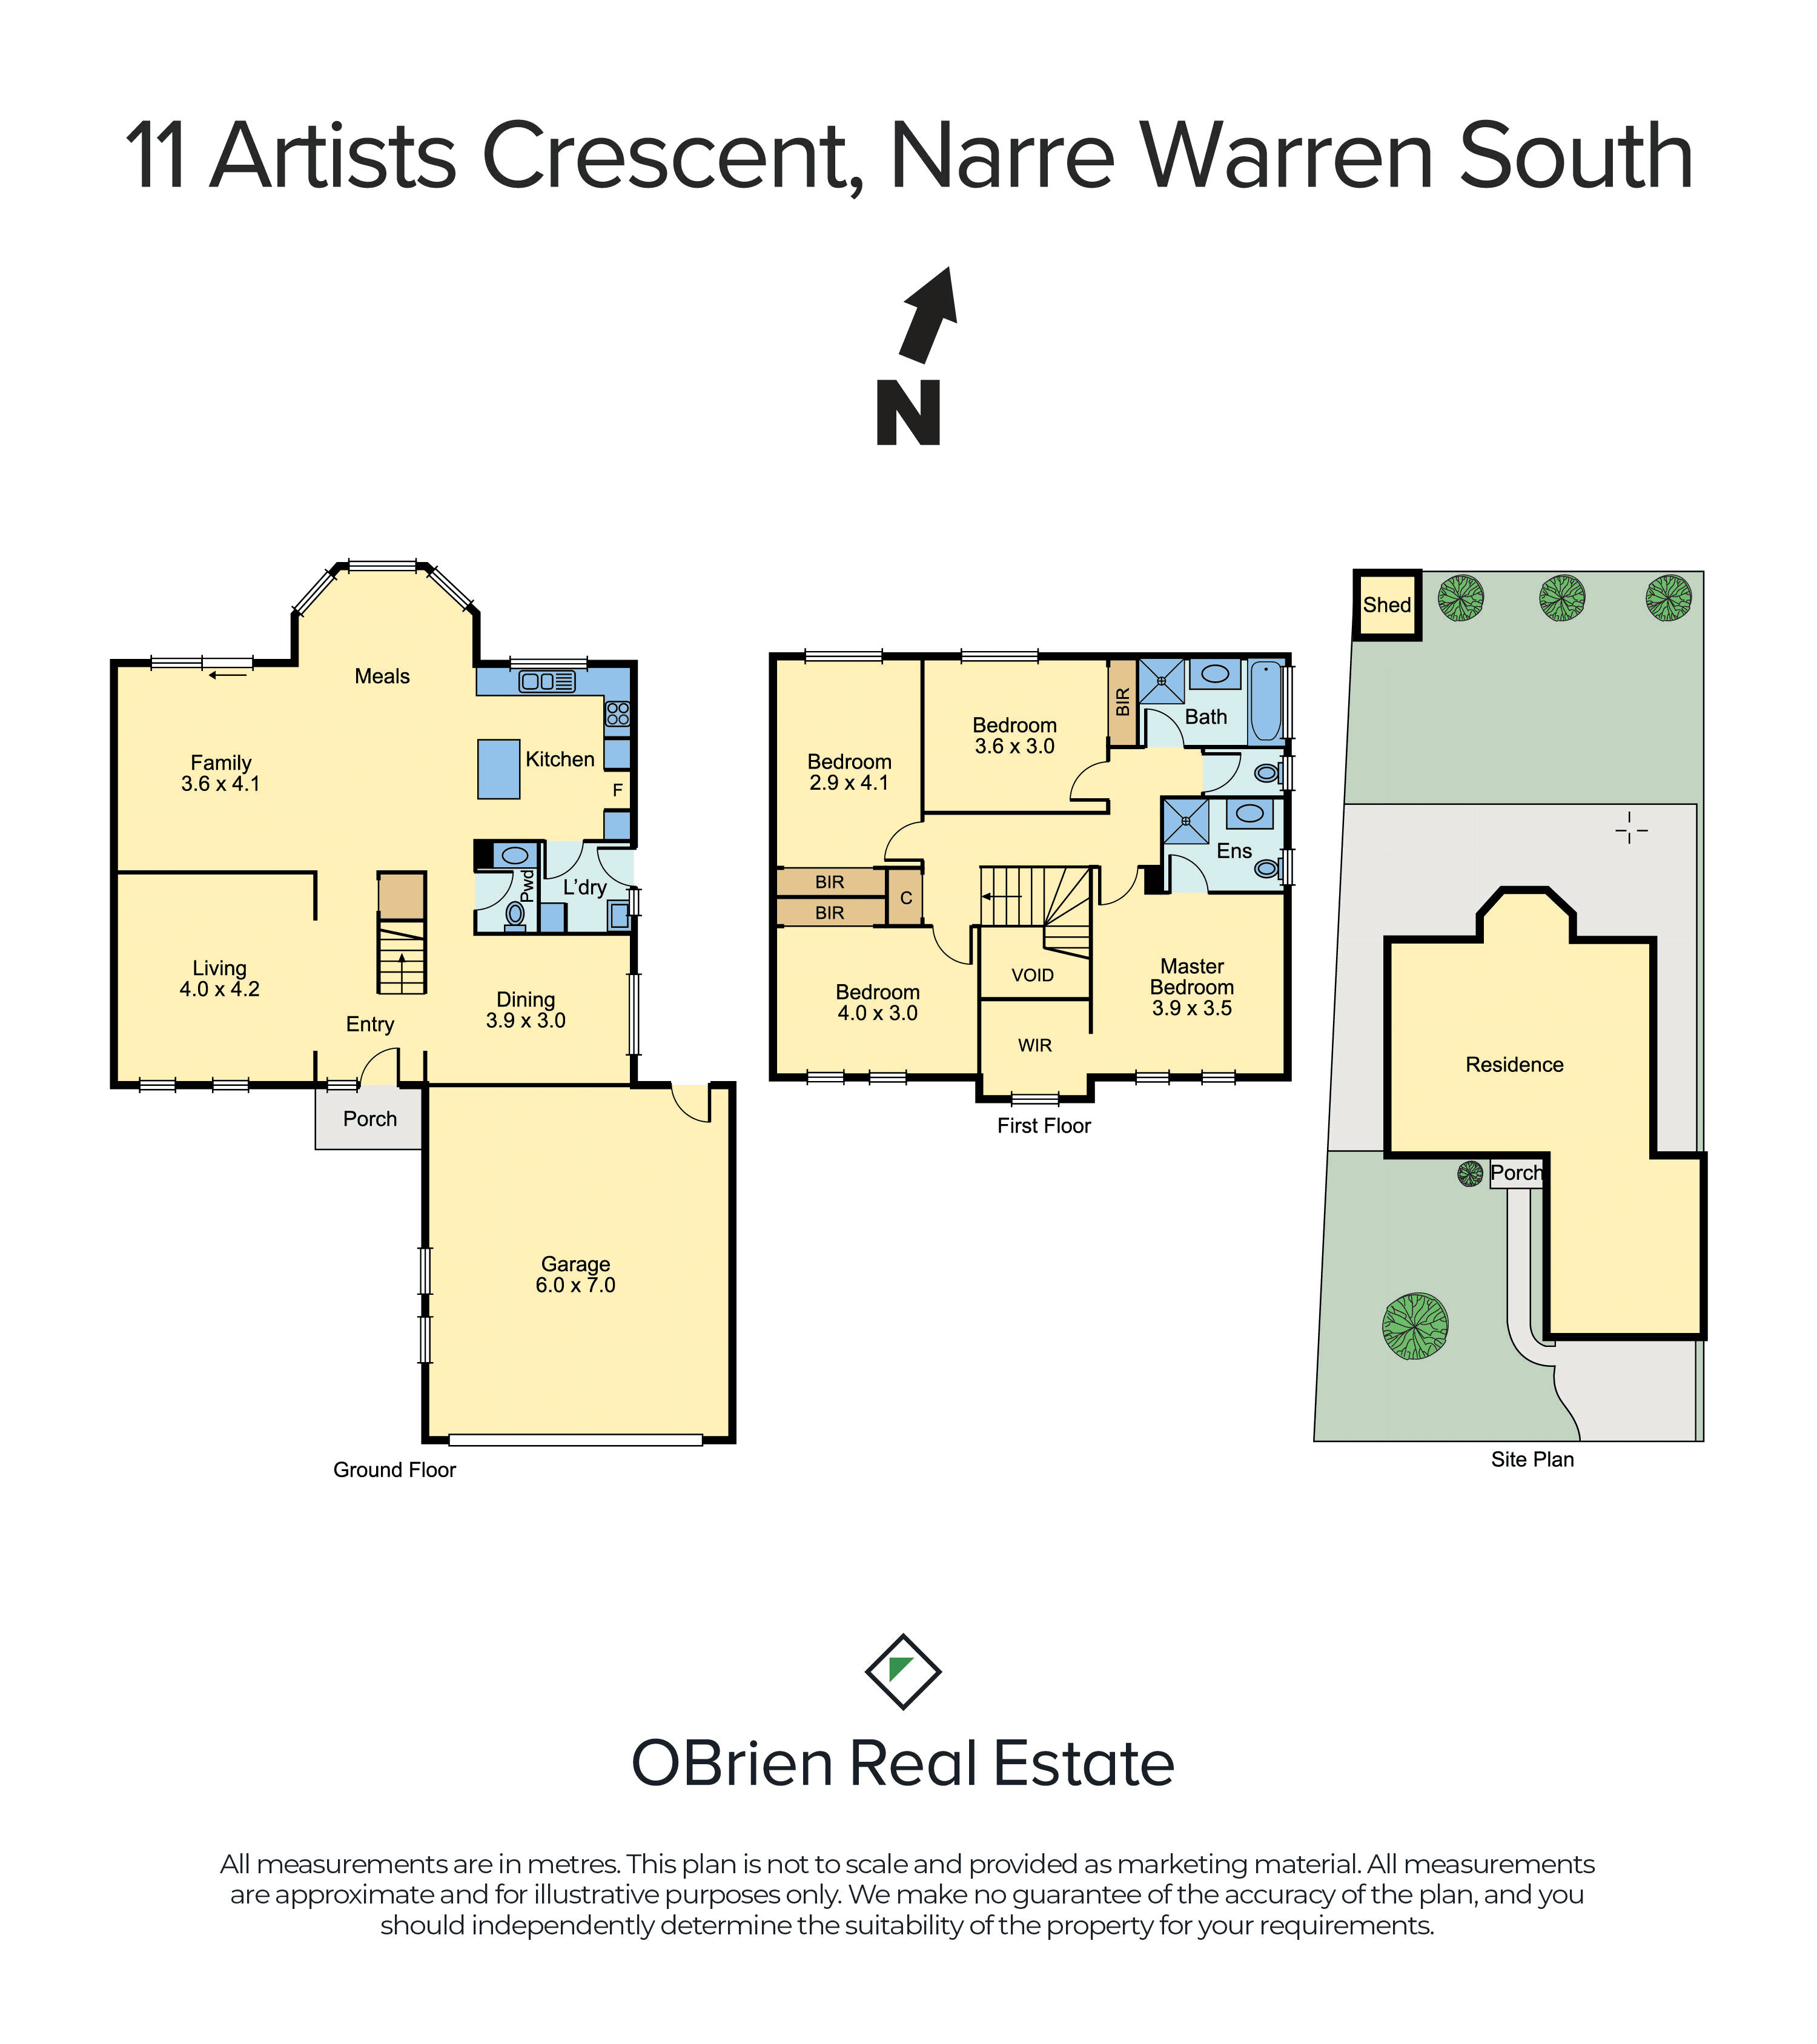 11 Artists Crescent, Narre Warren South, VIC 3805